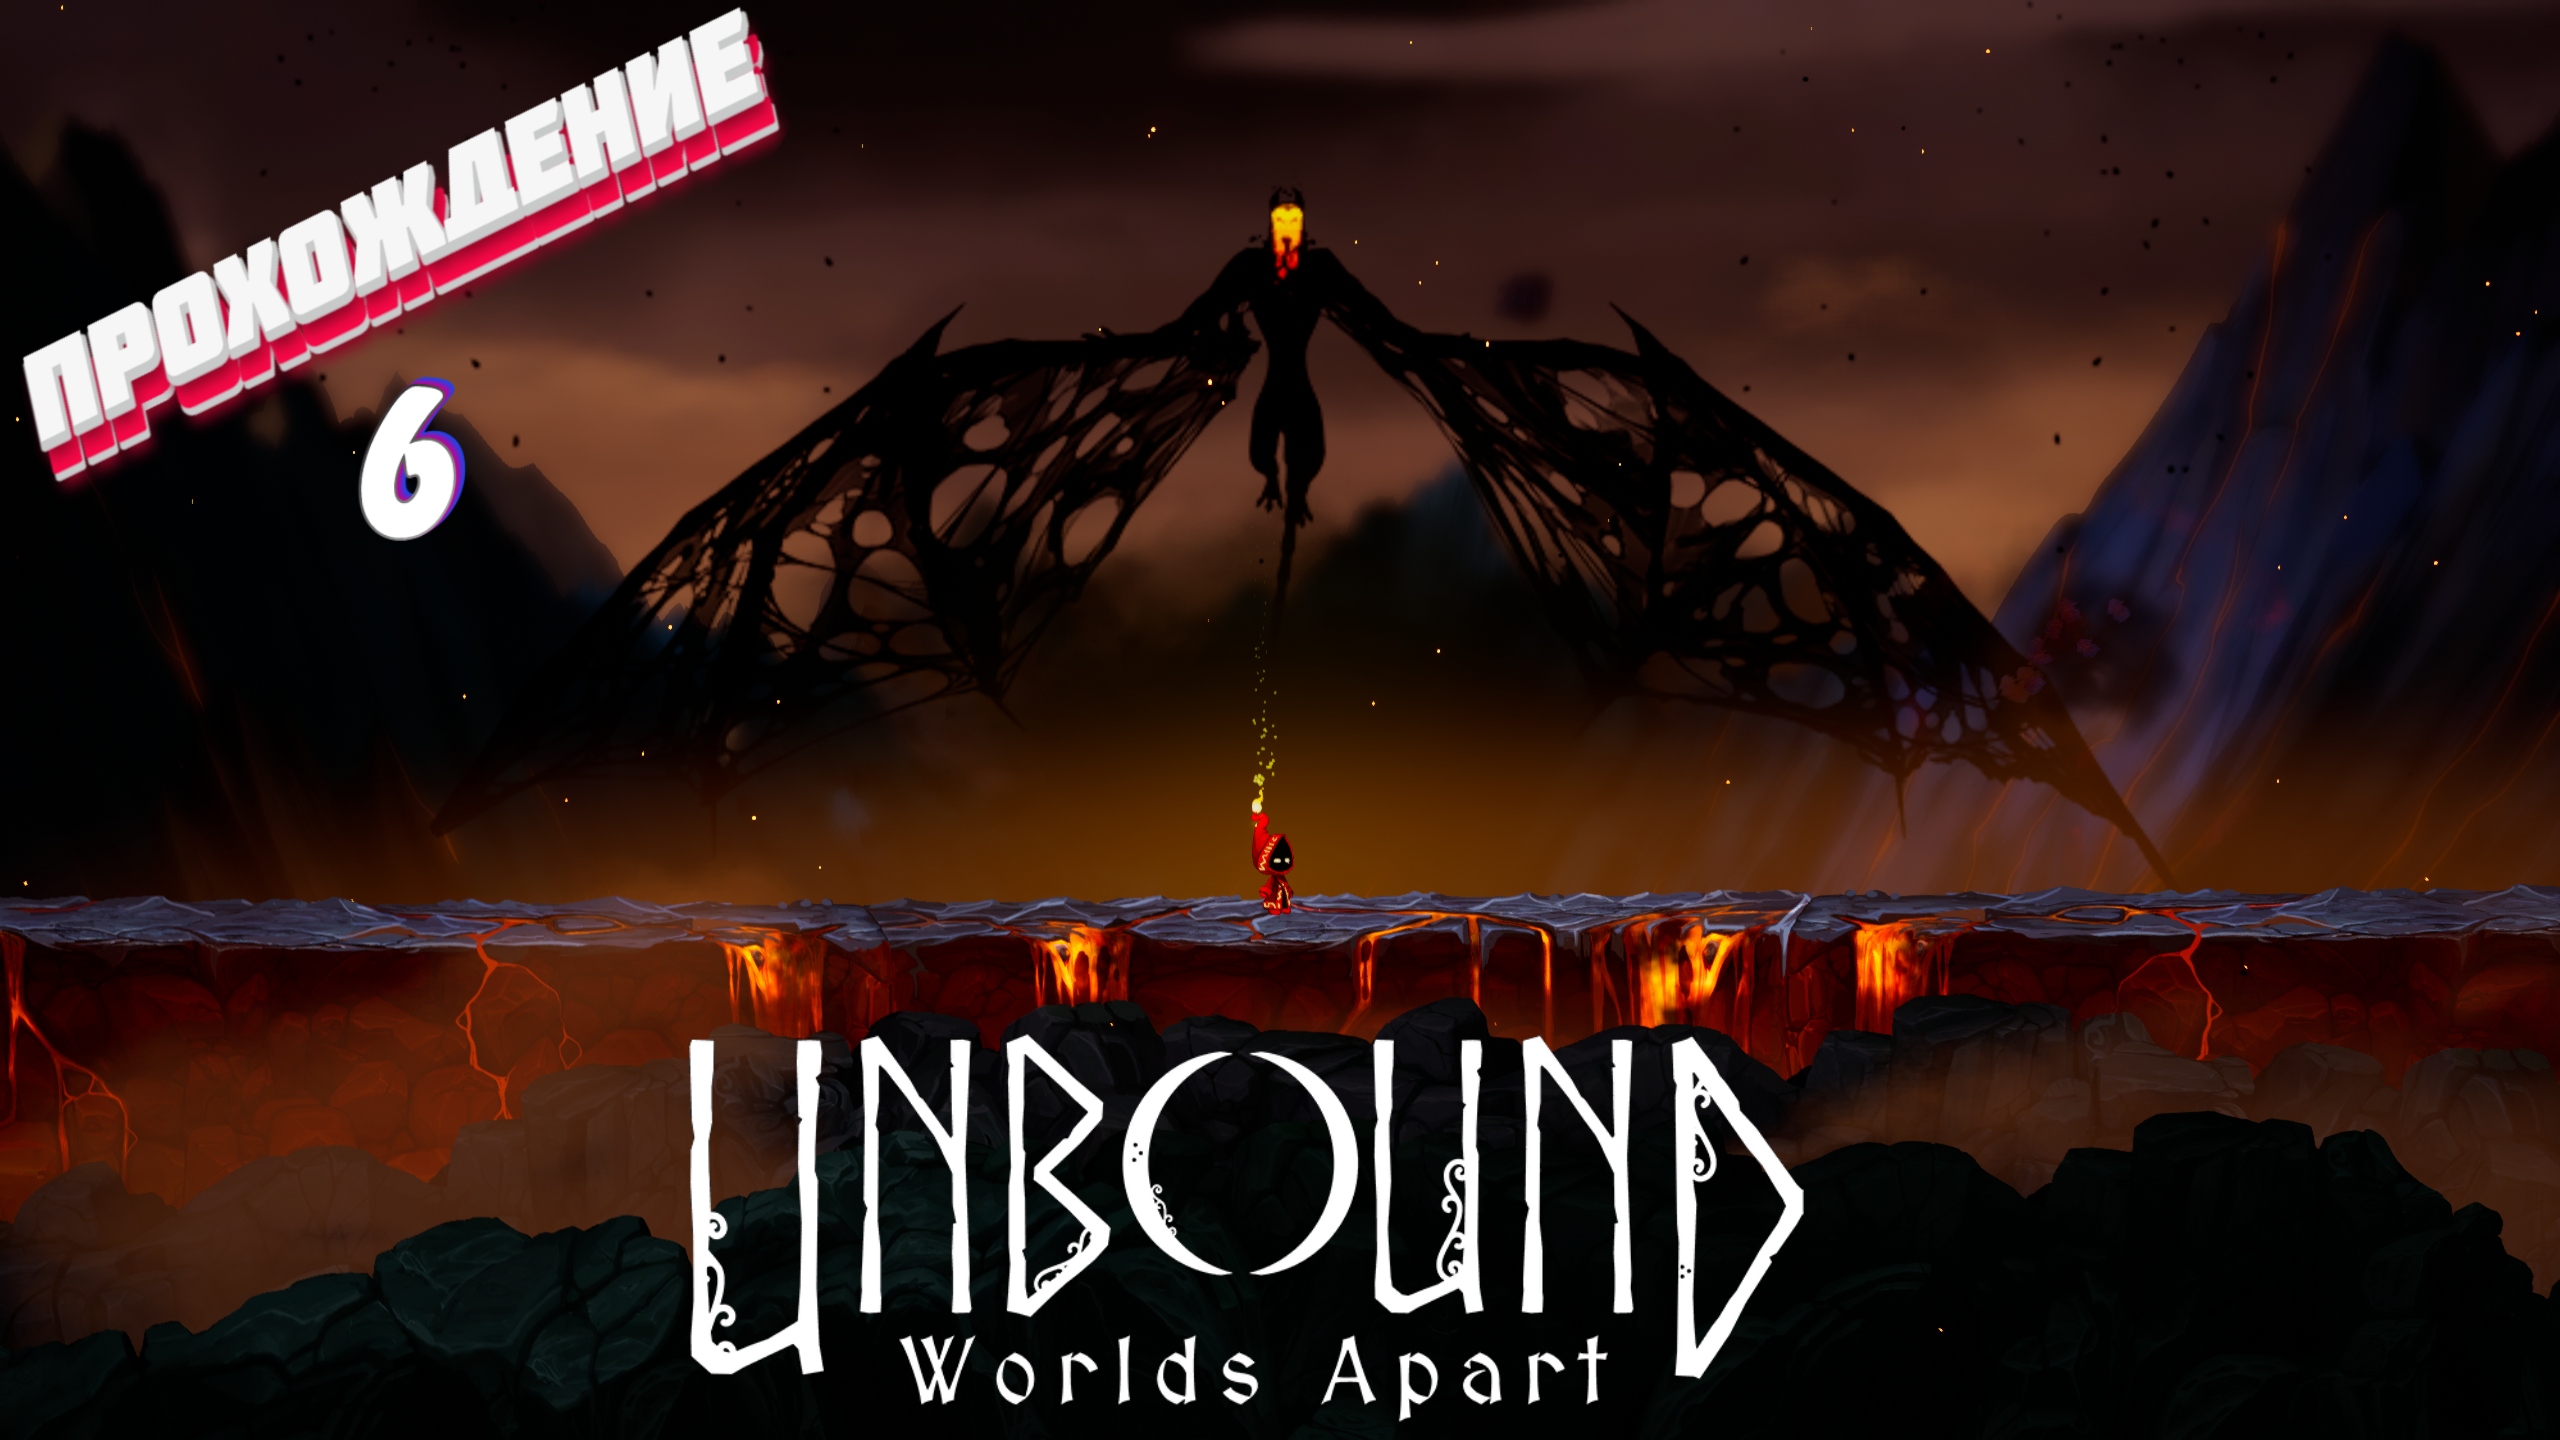 ОПЯТЬ КОЛЮЧКИ ► Unbound: Worlds Apart прохождение | # 6